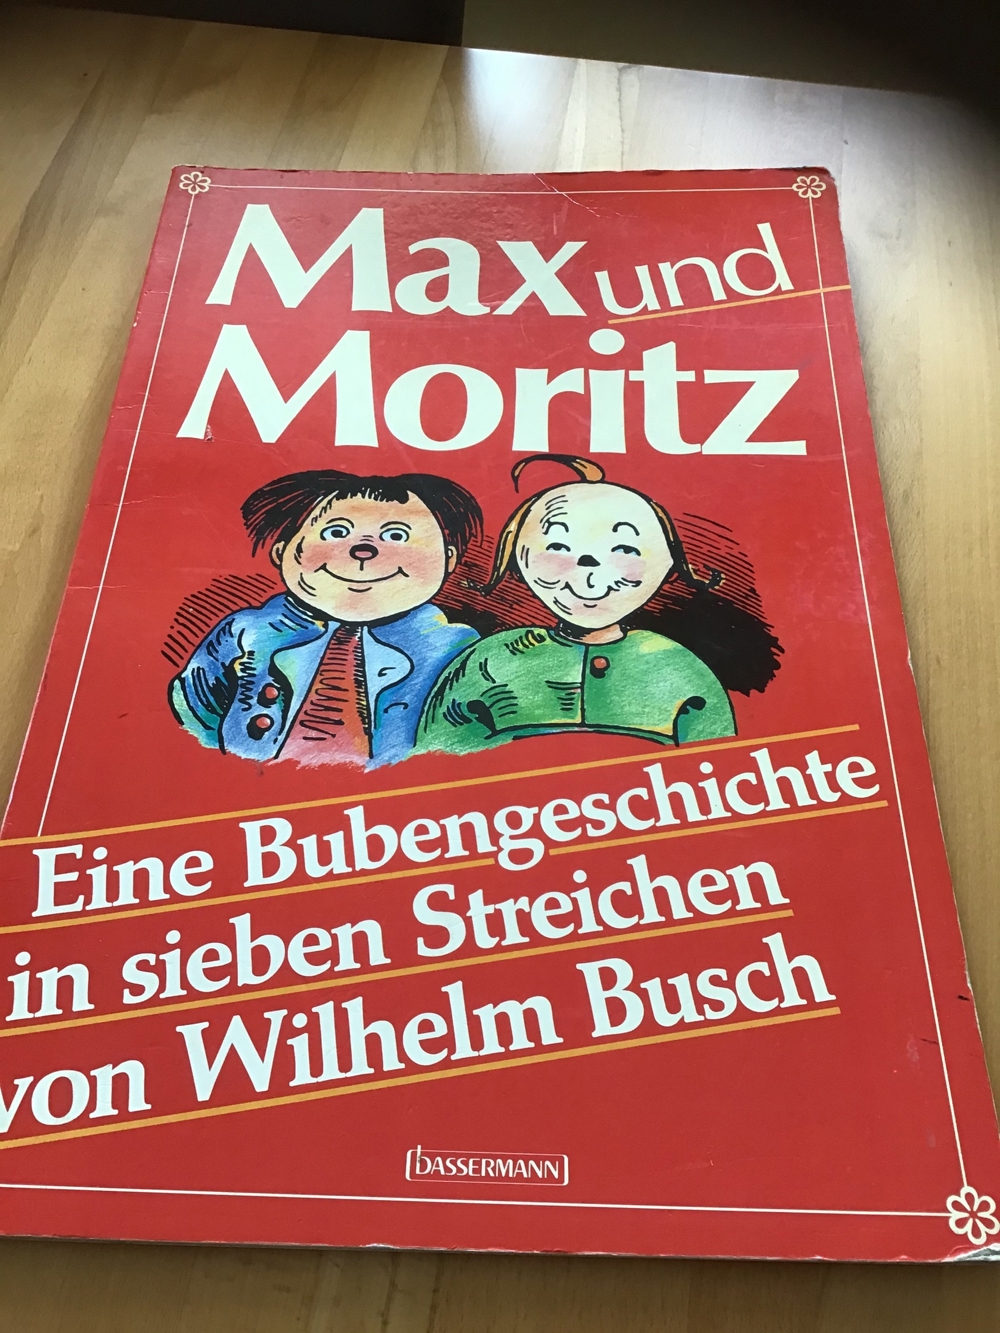 Max und Moritz Kinderbuch Sammlerstück groß